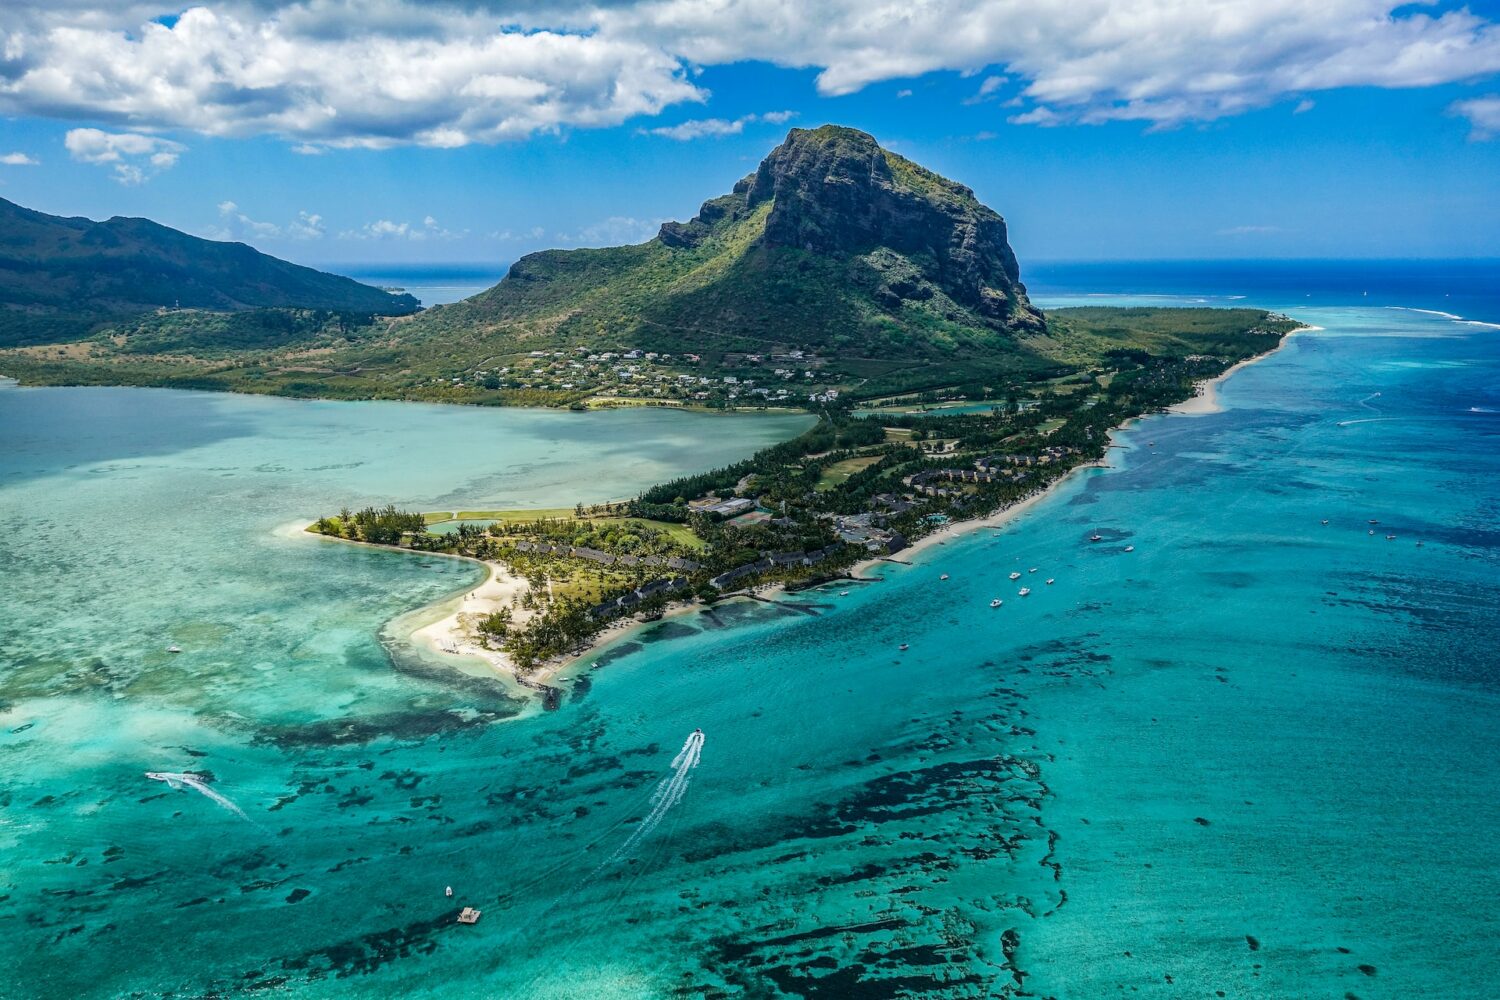 Fotografia aérea da ilha em tons de verde em volta do mar azul durante o dia, ilustrando post seguro viagem Ilhas Maurício.